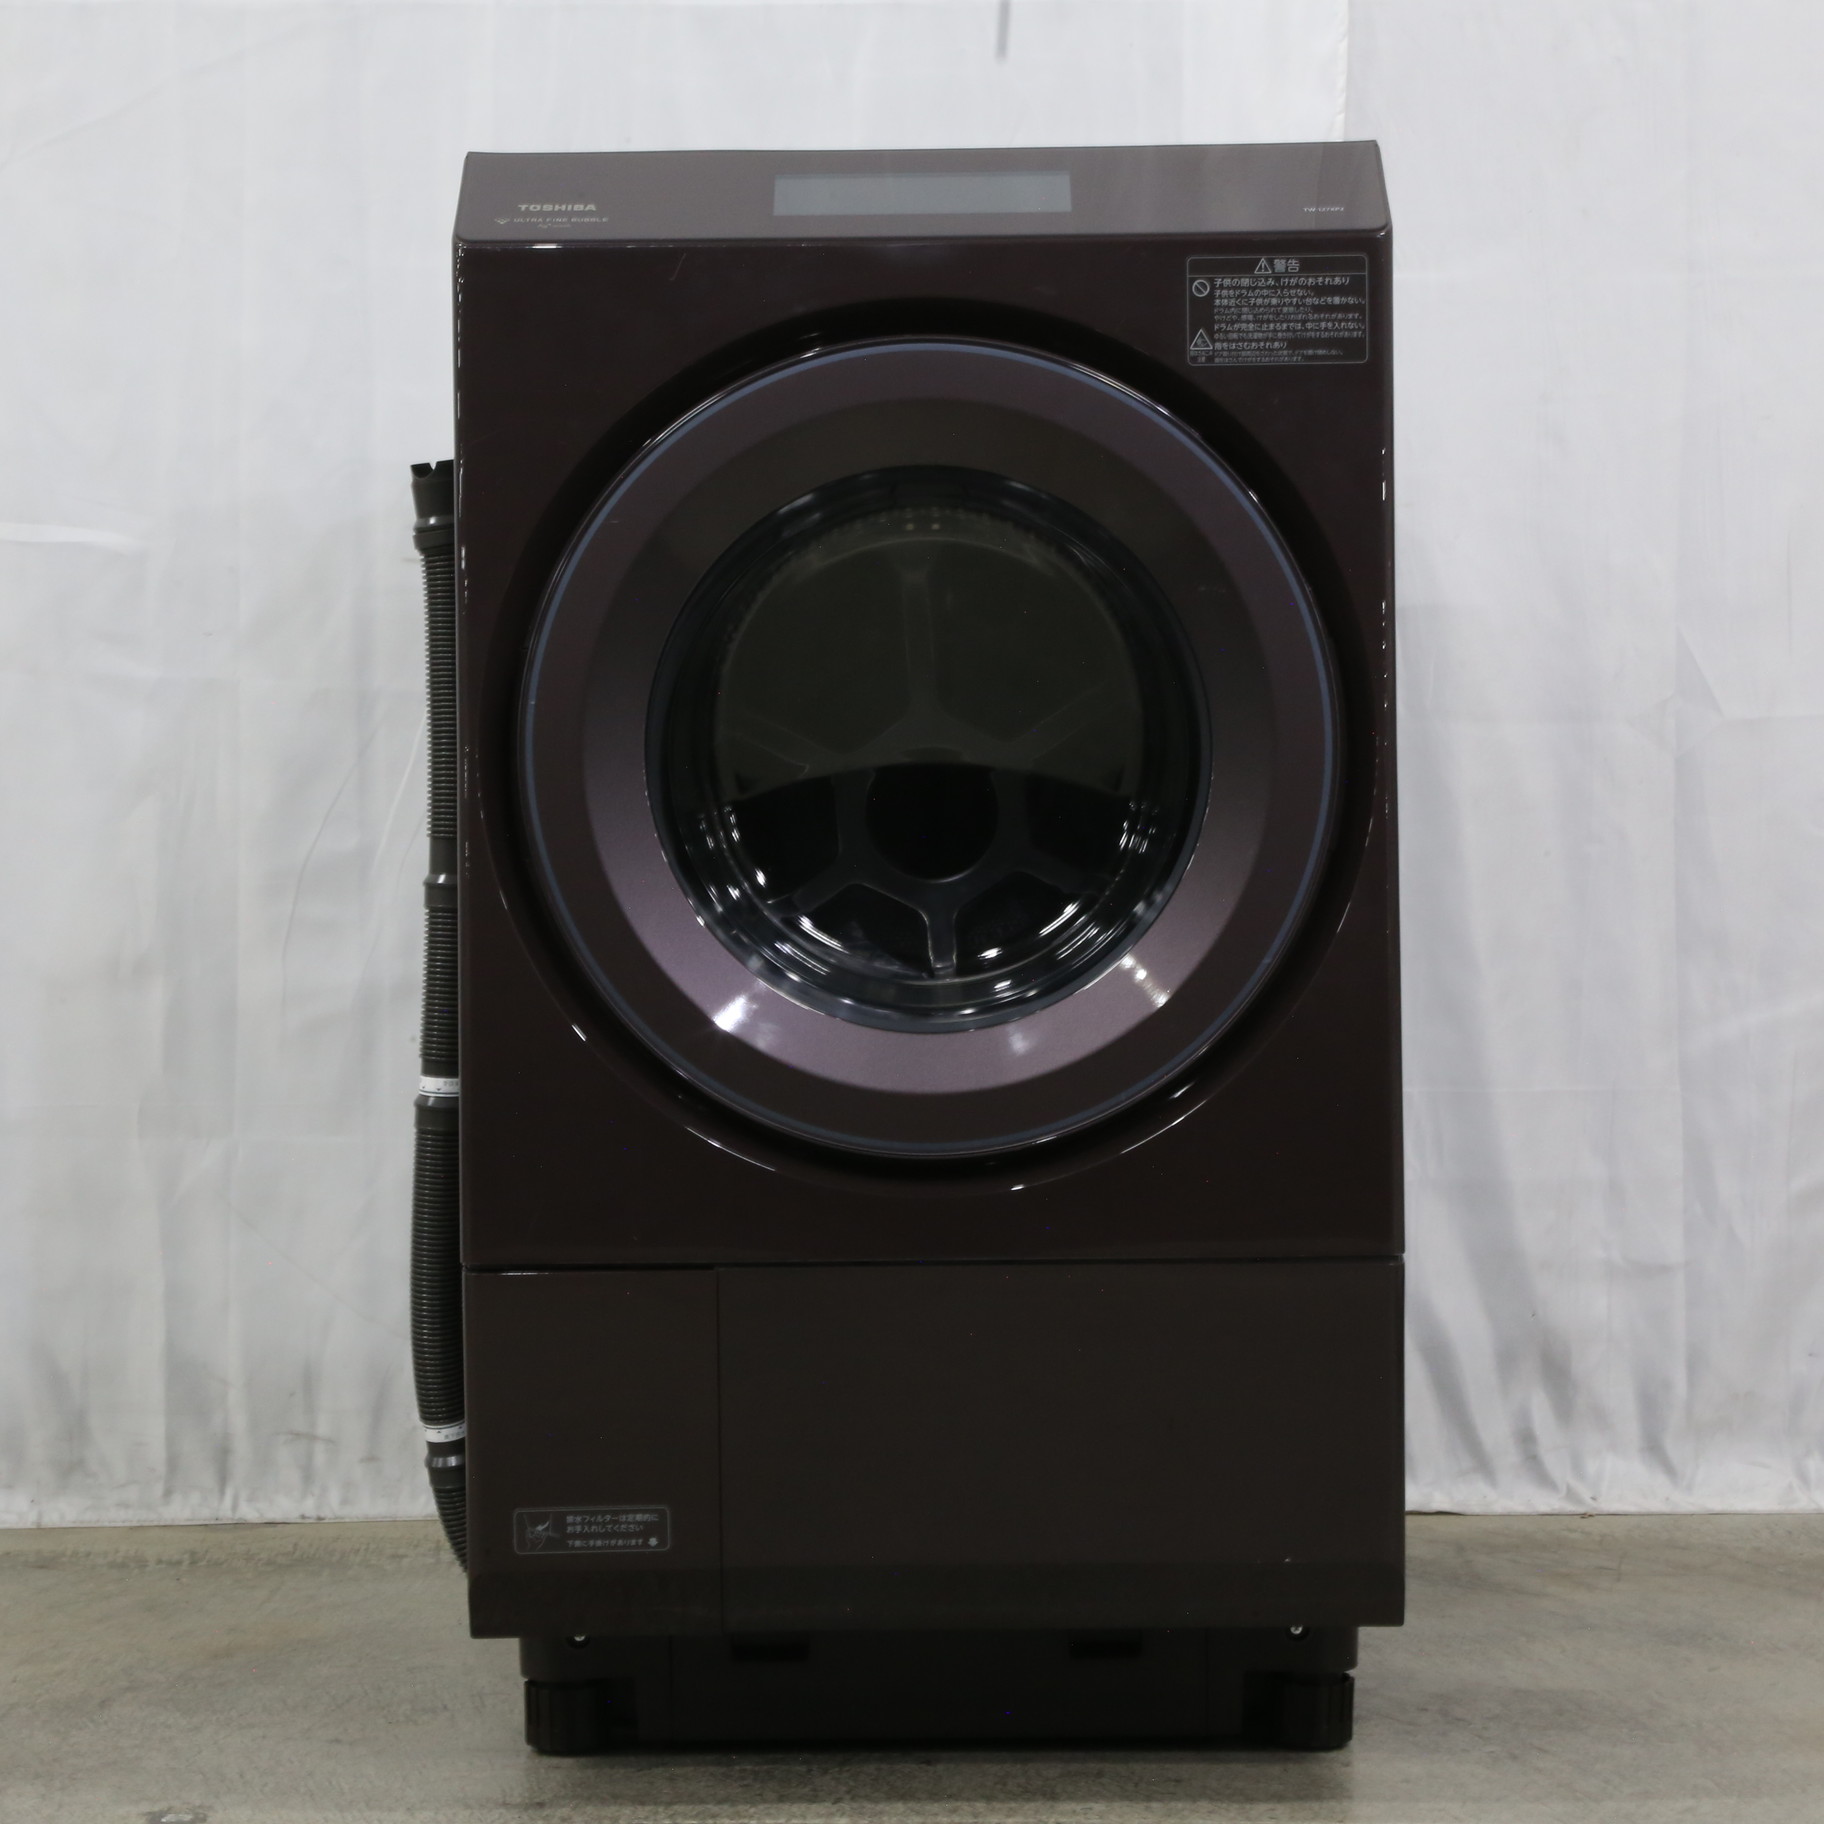 〔展示品〕 ドラム式洗濯乾燥機 ボルドーブラウン TW-127XP2L-T ［洗濯12.0kg ／乾燥7.0kg ／ヒートポンプ乾燥 ／左開き］